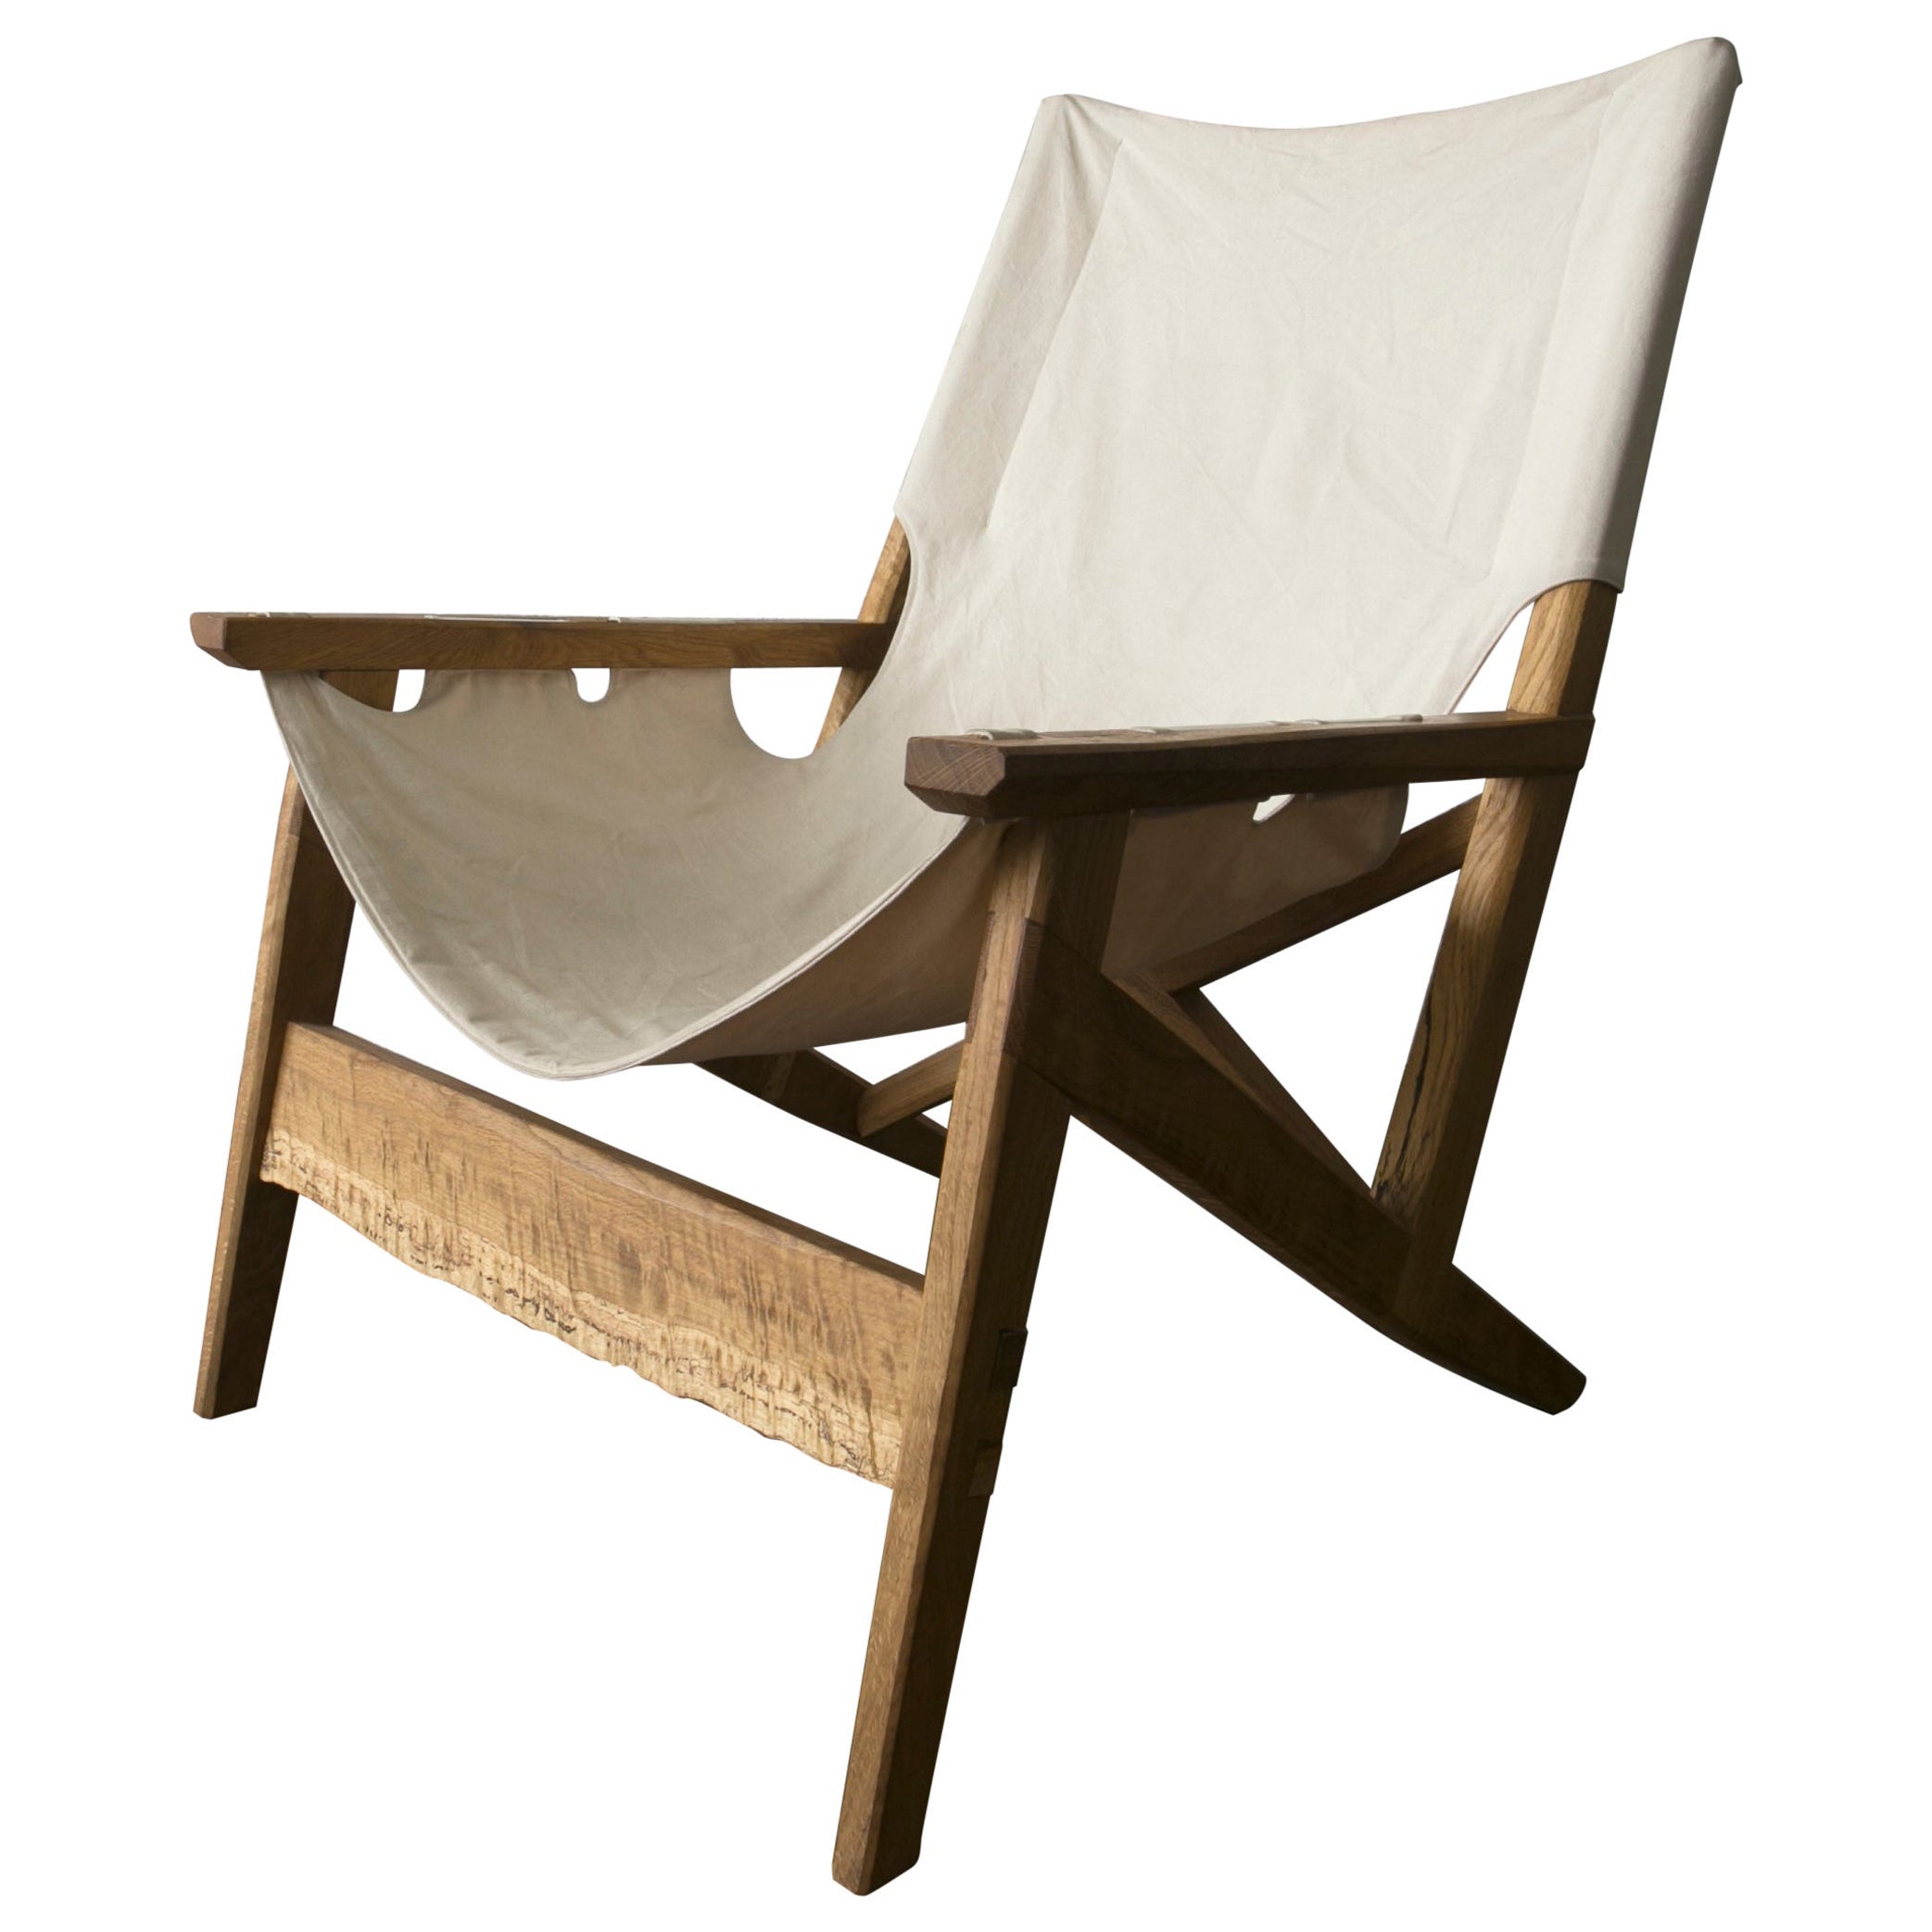 Unser originelles Sling Chair Design wurde mit dem Ziel entwickelt, einen nachhaltigen Stuhl zu schaffen, der Komfort und Schönheit vereint. Der Rahmen ist vom dänischen Design inspiriert und so handgefertigt, dass er auseinandergenommen und bei